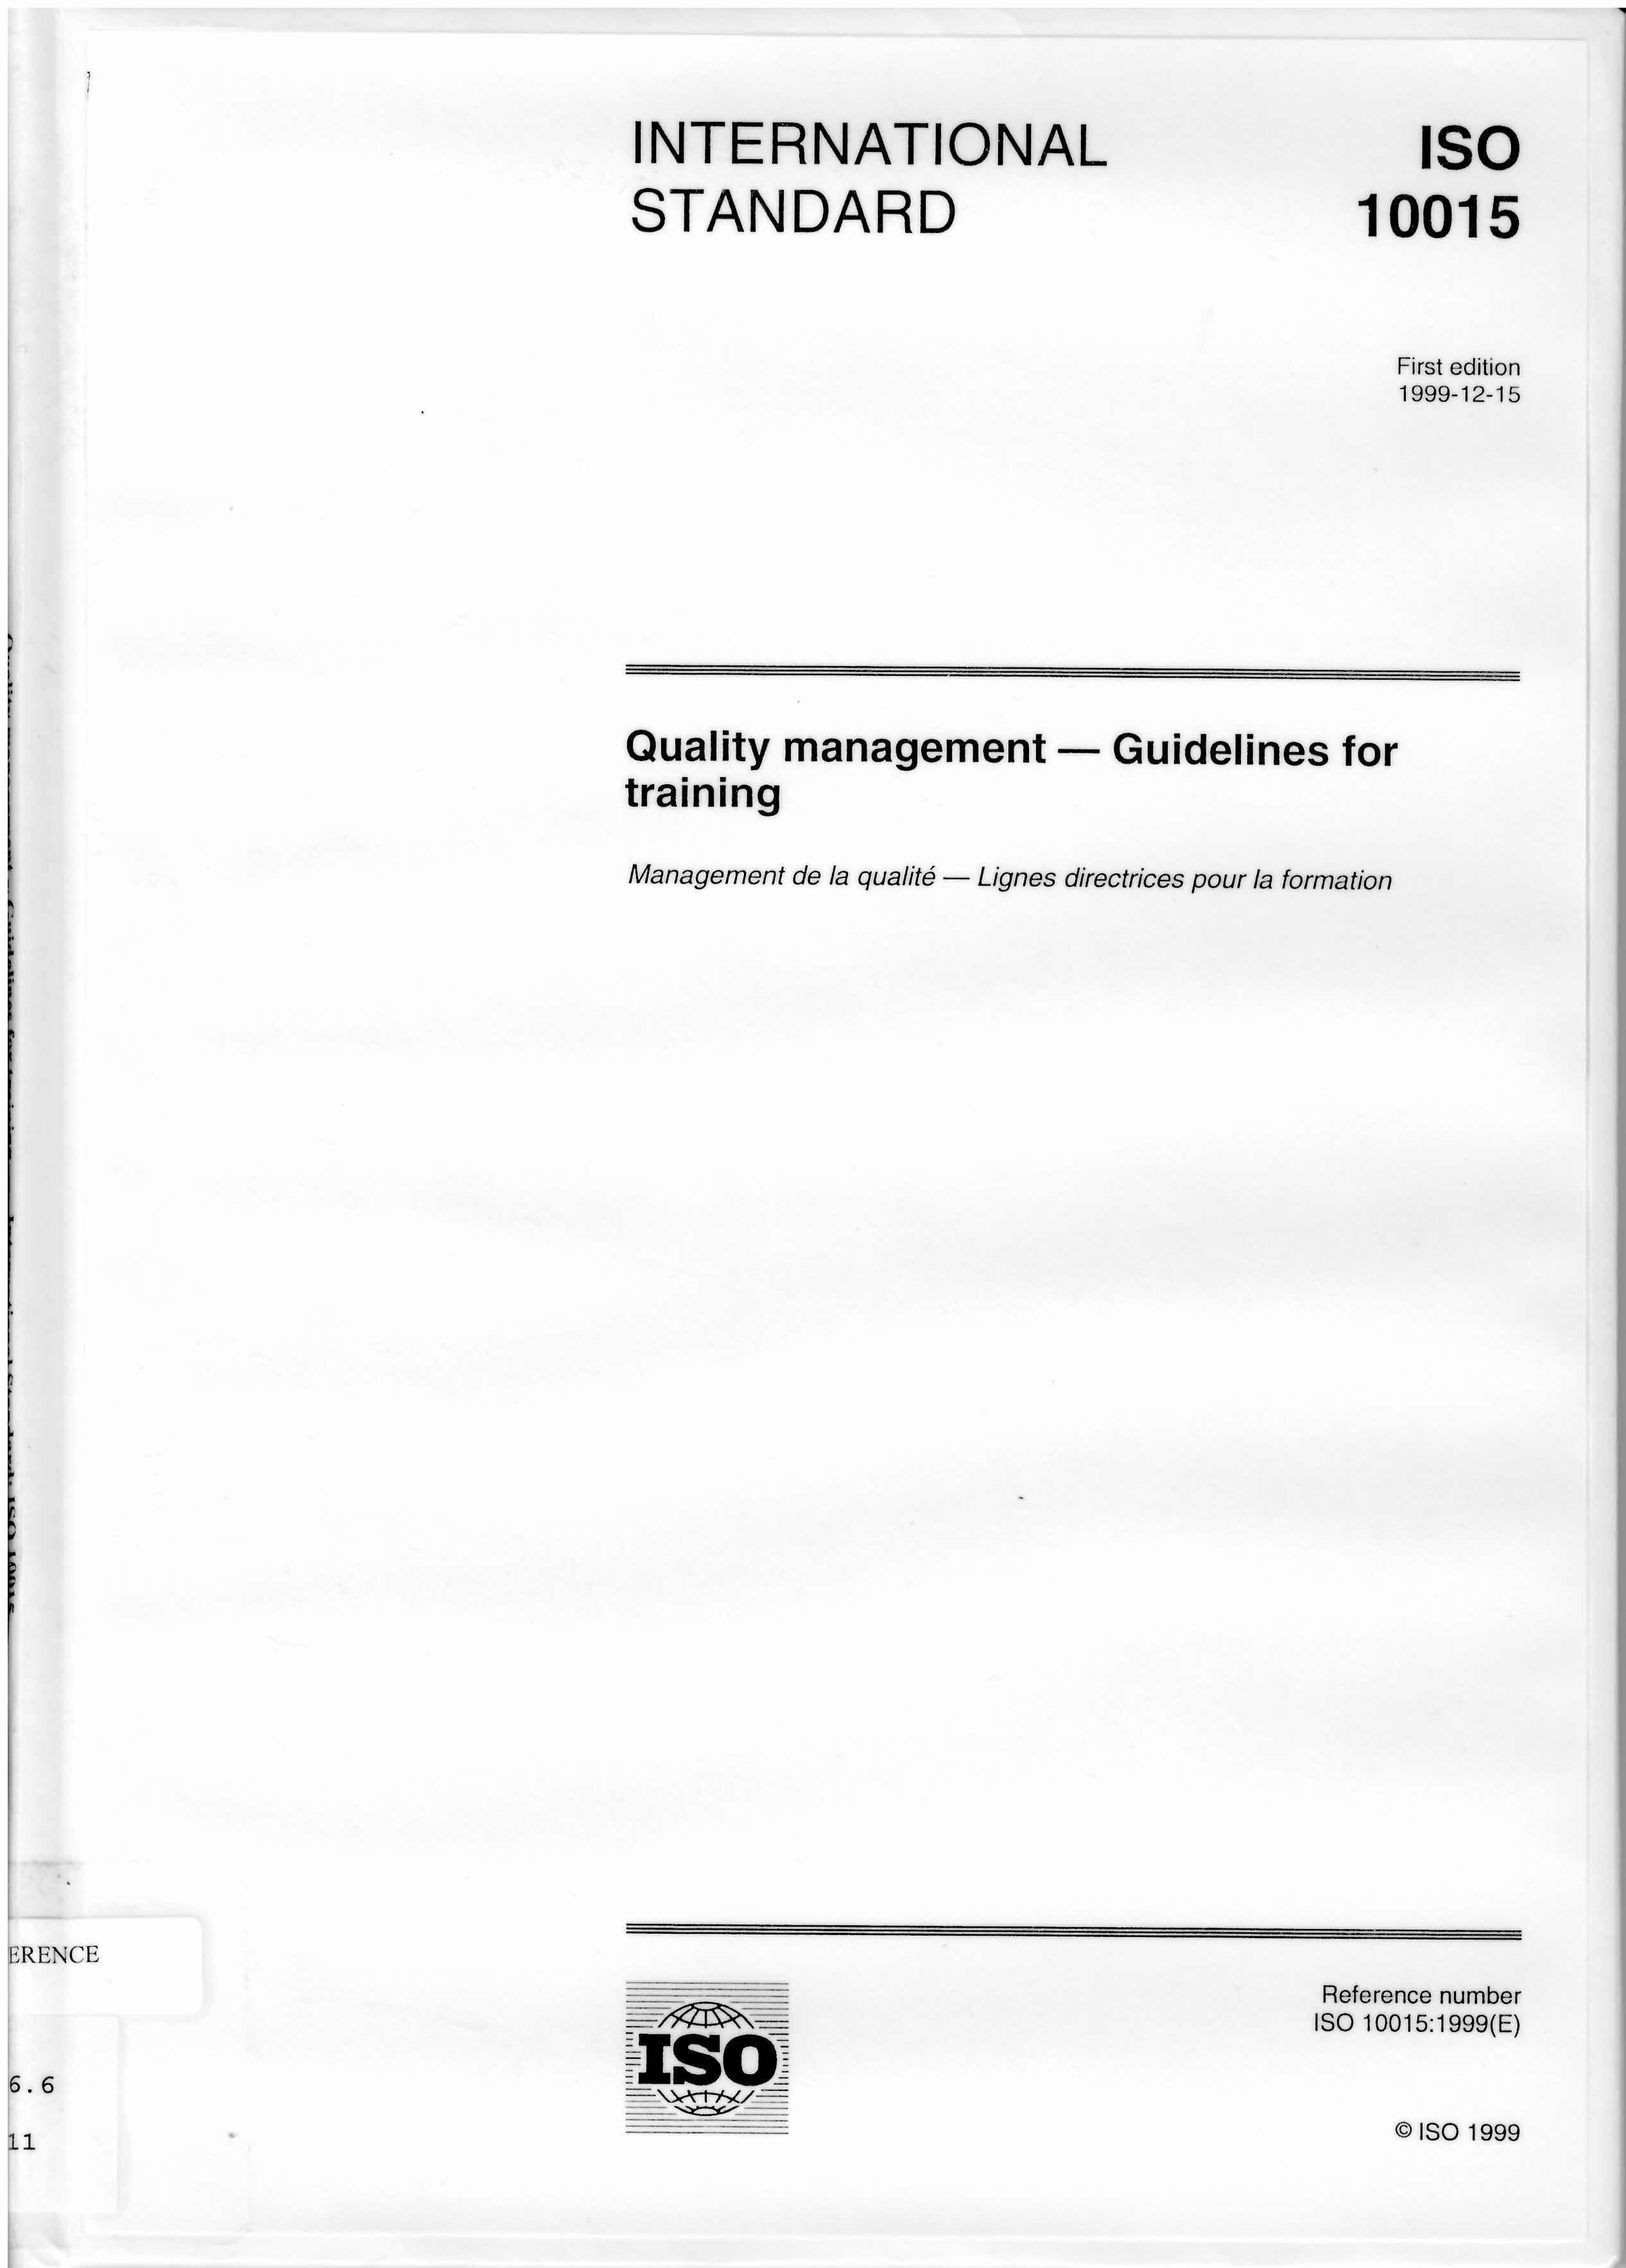 Quality management : guidelines for training = Management de la qualite - lignes directrices pour la formation